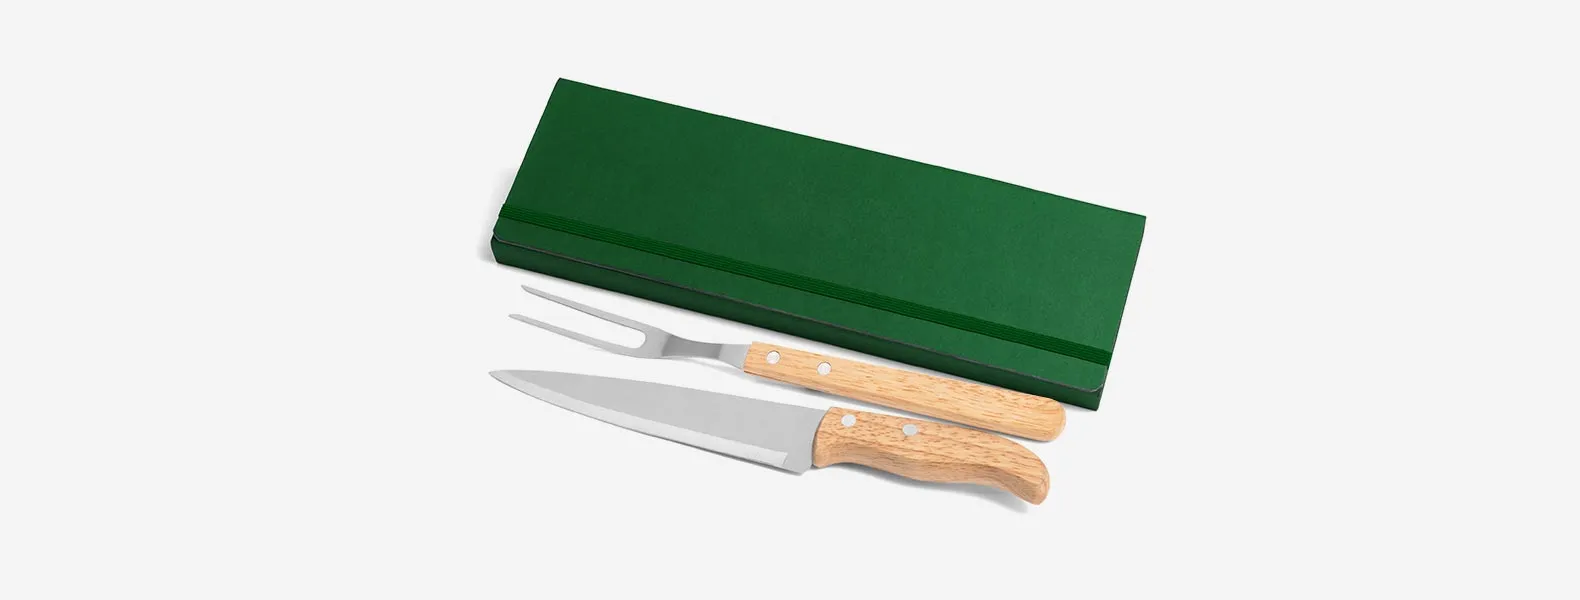 Conjunto composto por uma faca 7” e um garfo trinchante, ambos com cabos em madeira e lâminas em aço Inox. Estão organizados em uma pasta verde com elásticos.